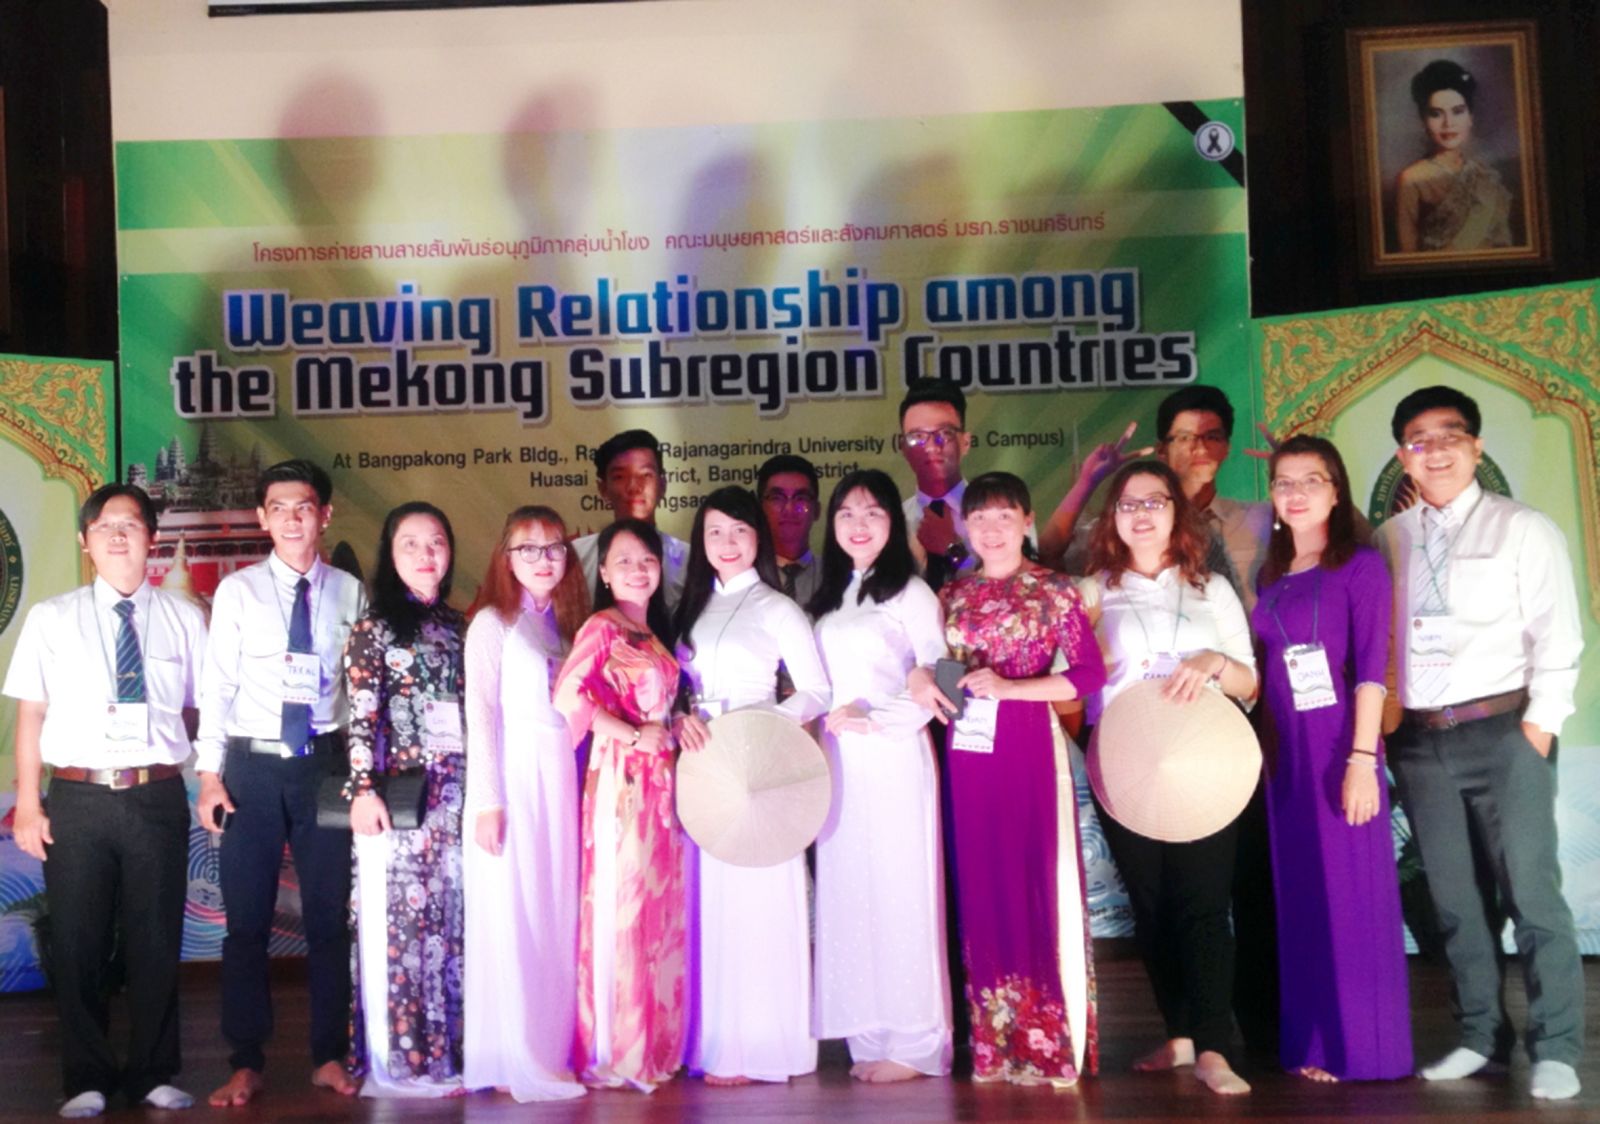 Đoàn cán bộ, sinh viên Trường Đại học Kỹ thuật - Công nghệ Cần Thơ tham gia hội trại “Gắn kết quan hệ giữa các nước tiểu vùng Mekong 2017” tại RRU, Thái Lan. Ảnh: Đoàn Trường Đại học Kỹ thuật - Công nghệ Cần Thơ cung cấp.